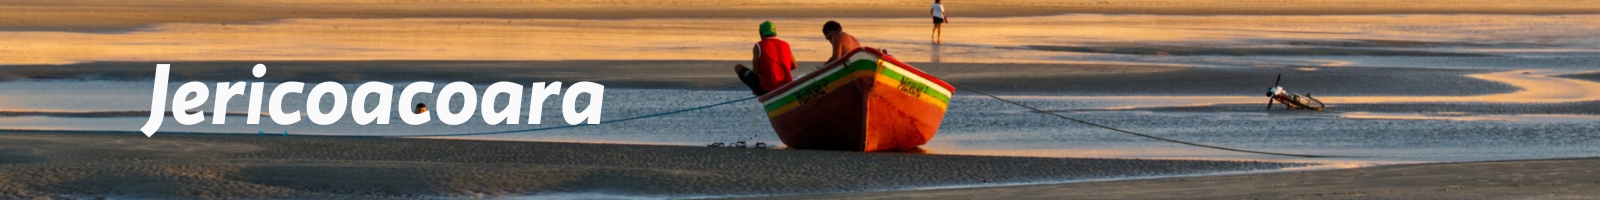 Paysage brésilien à Jericoacoara. plage de sable blanc avec une barque et des pêcheurs. Guide d'adresse au brésil avec des destinations brésiliennes.